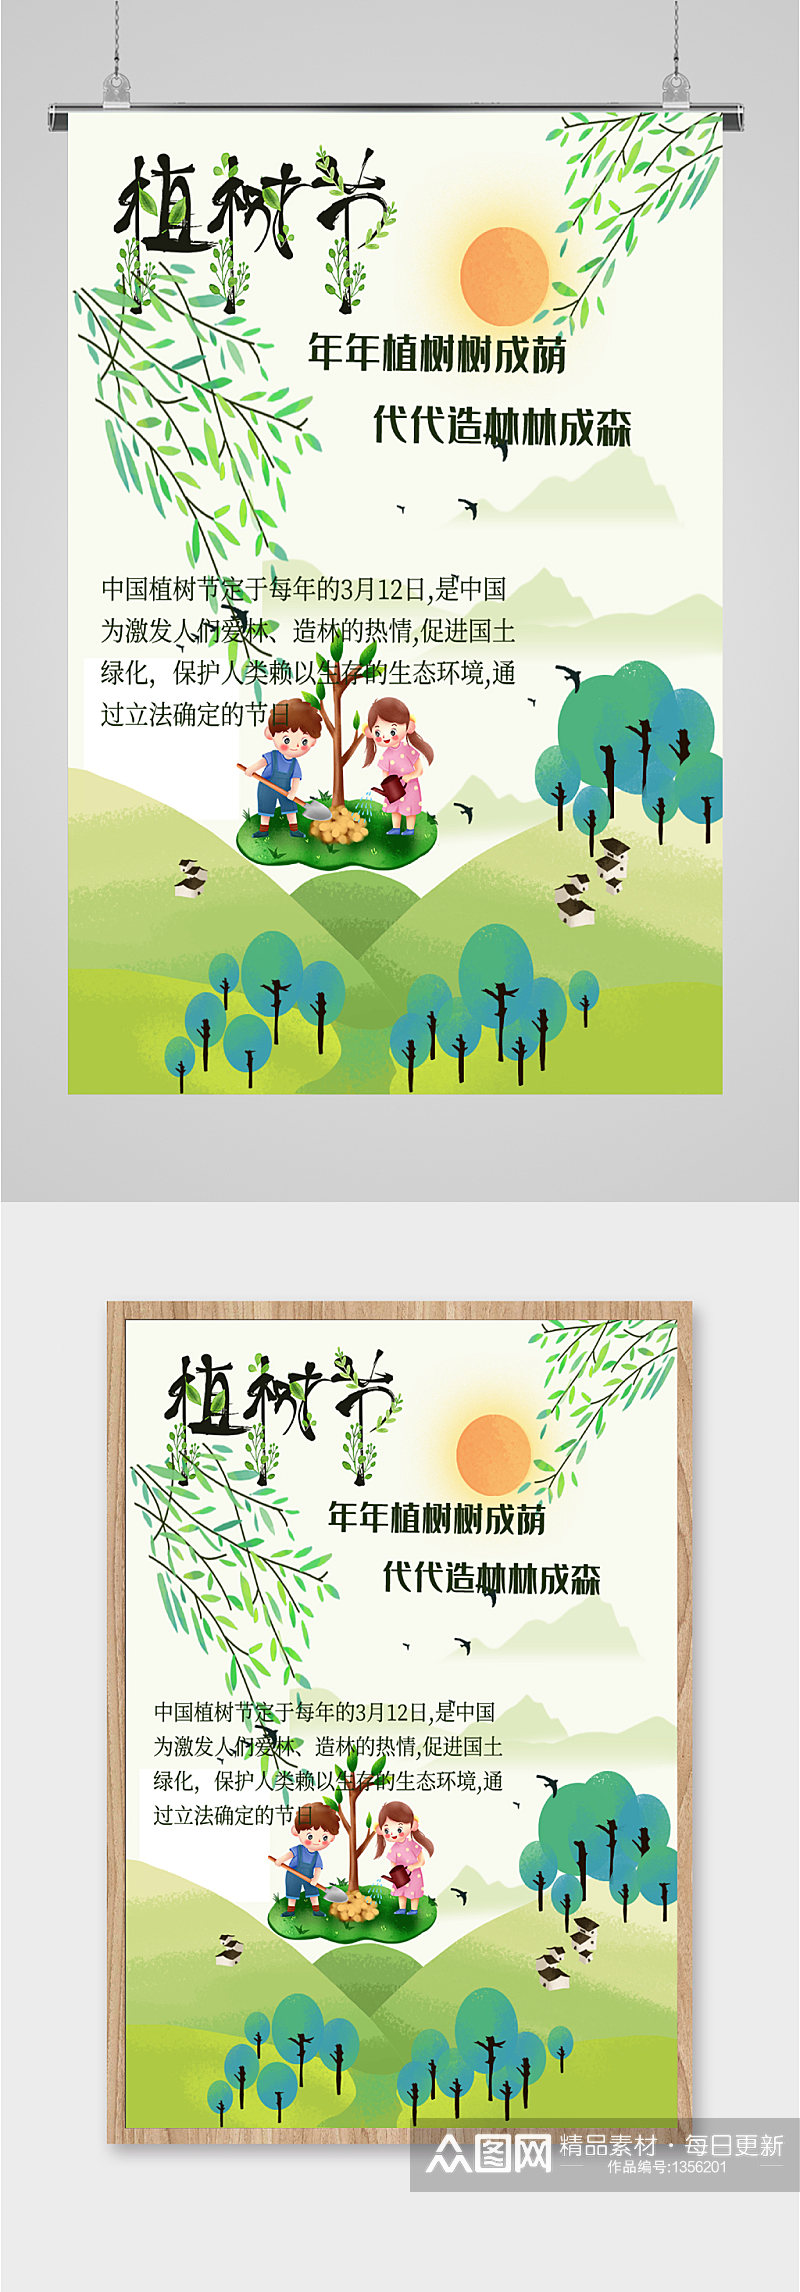 植树节节日宣传海报素材